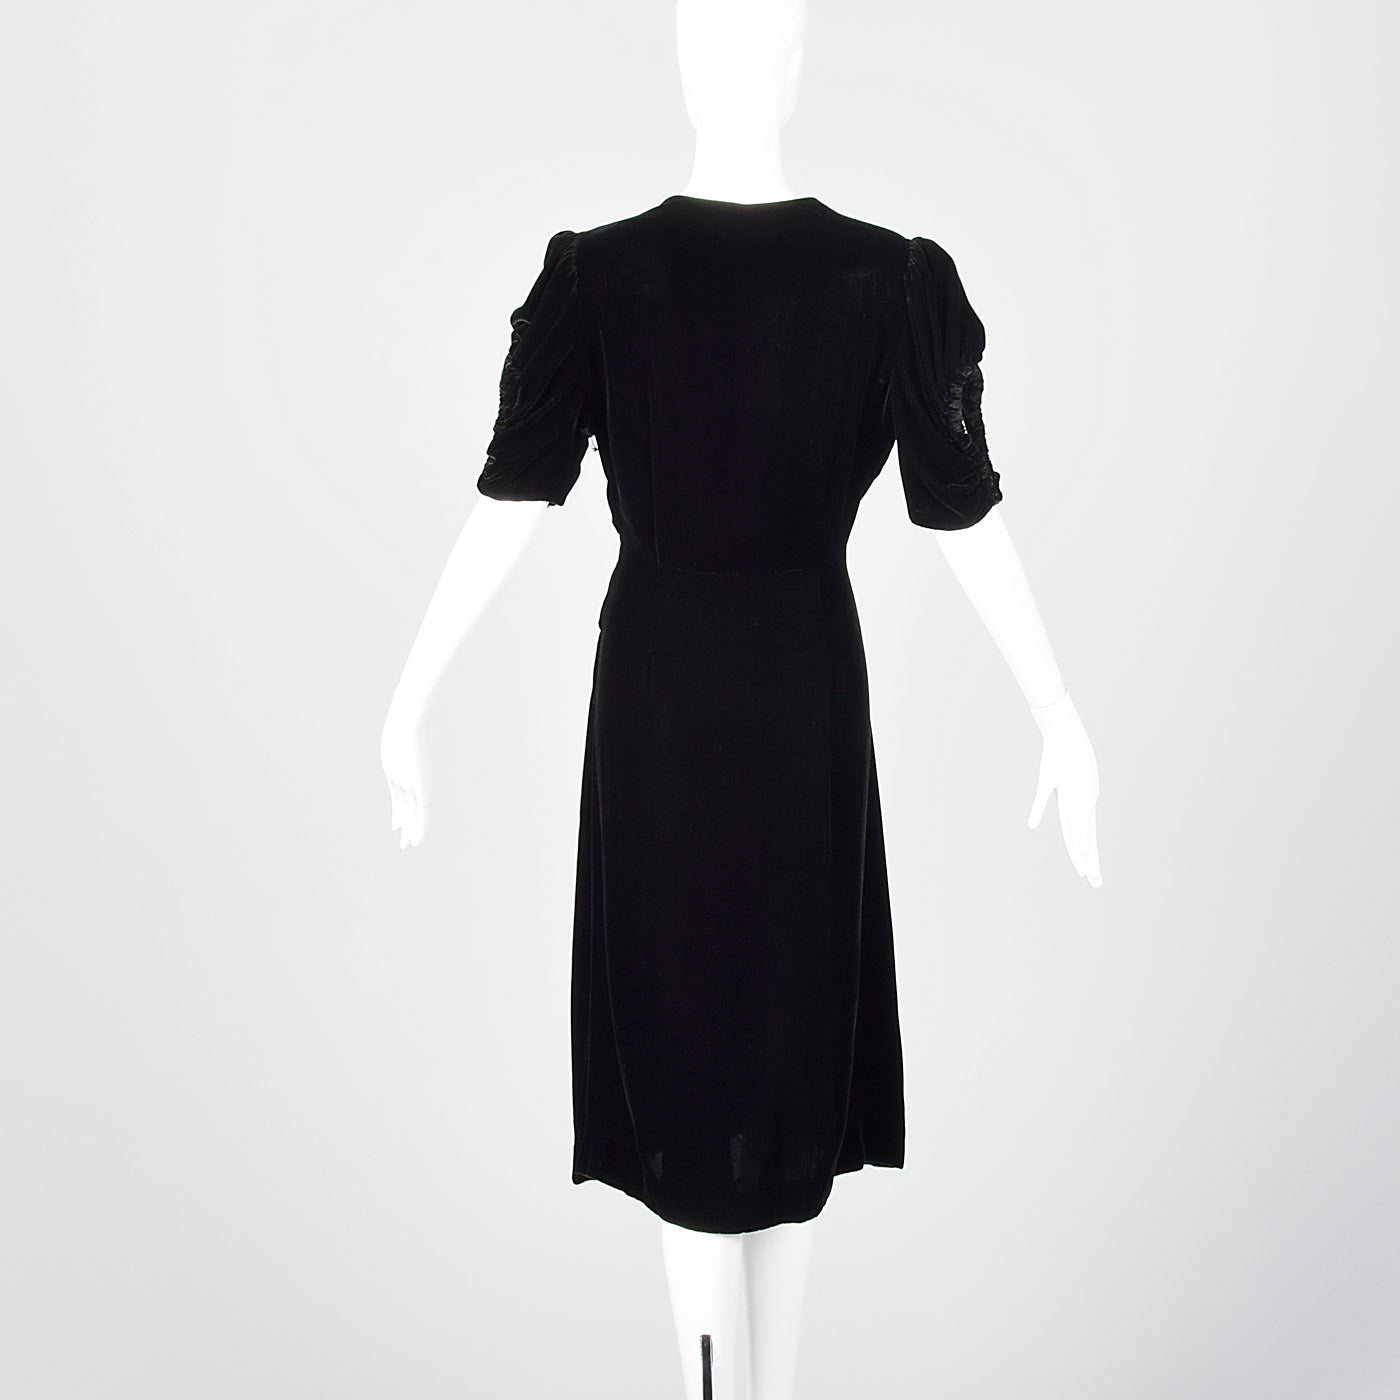 Large 1940s Black Velvet Dress with Open Sleeve Detail